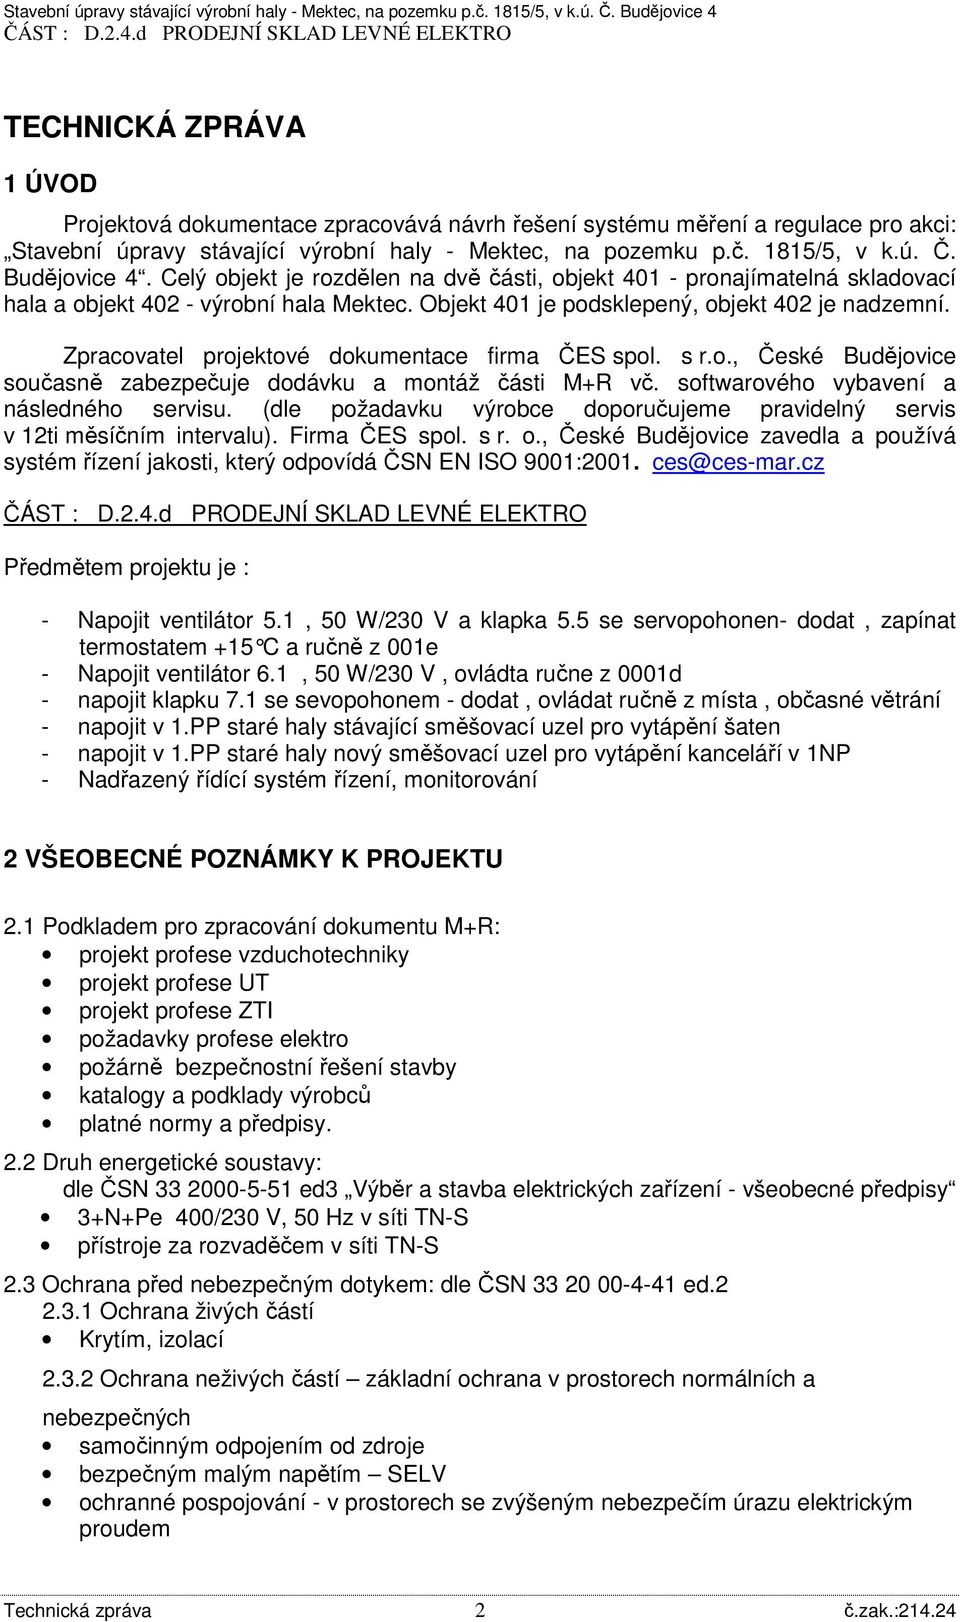 Zpracovatel projektové dokumentace firma ČES spol. s r.o., České Budějovice současně zabezpečuje dodávku a montáž části M+R vč. softwarového vybavení a následného servisu.